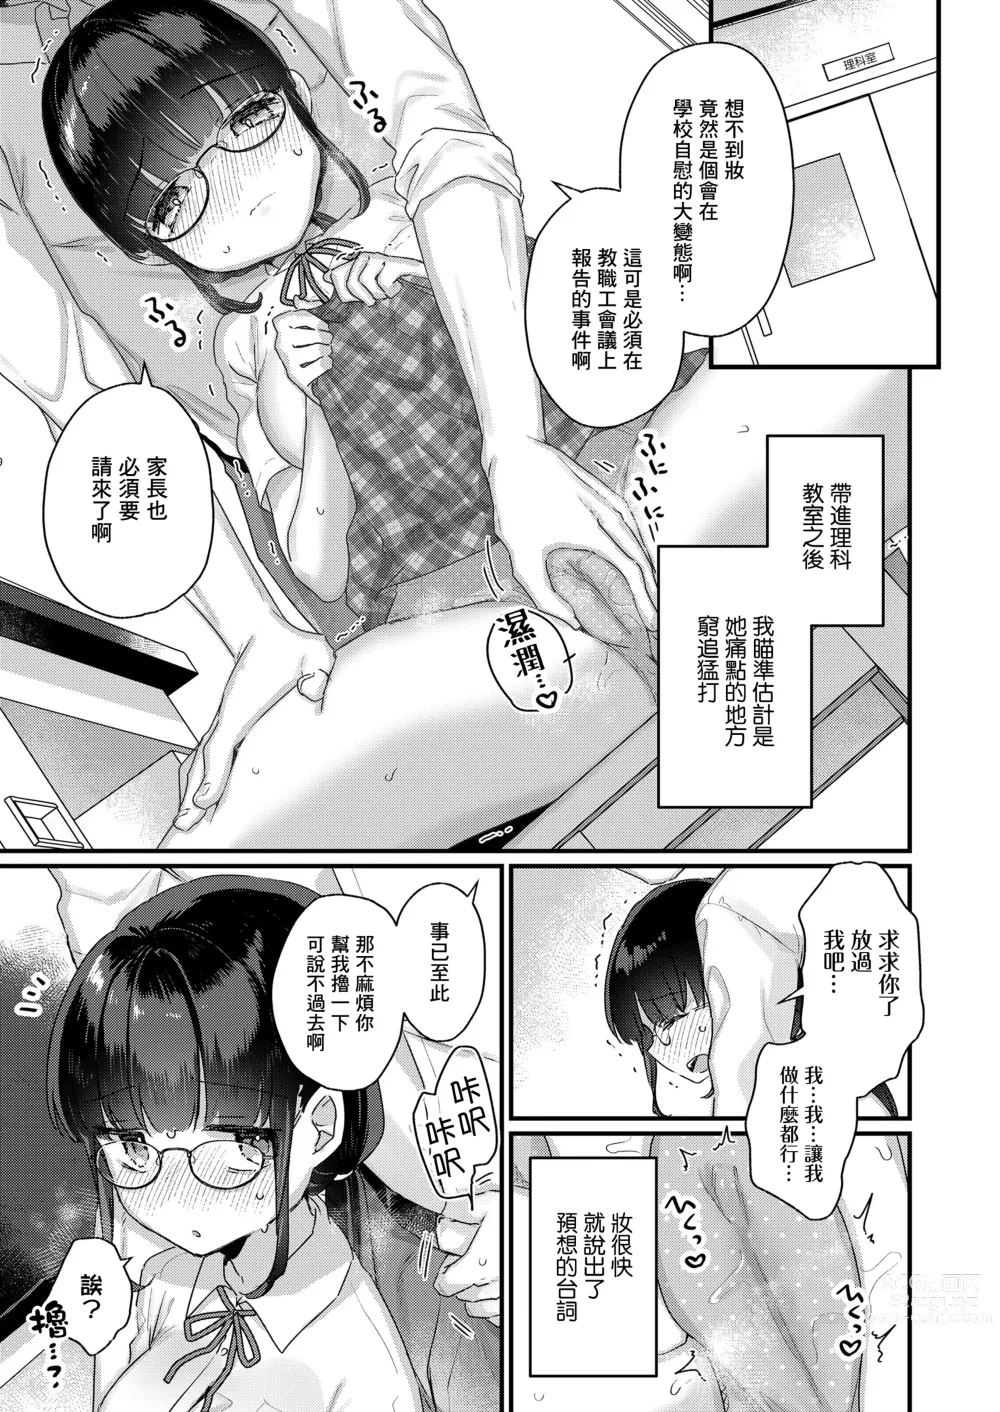 Page 6 of manga Konna no Shiritakunakatta